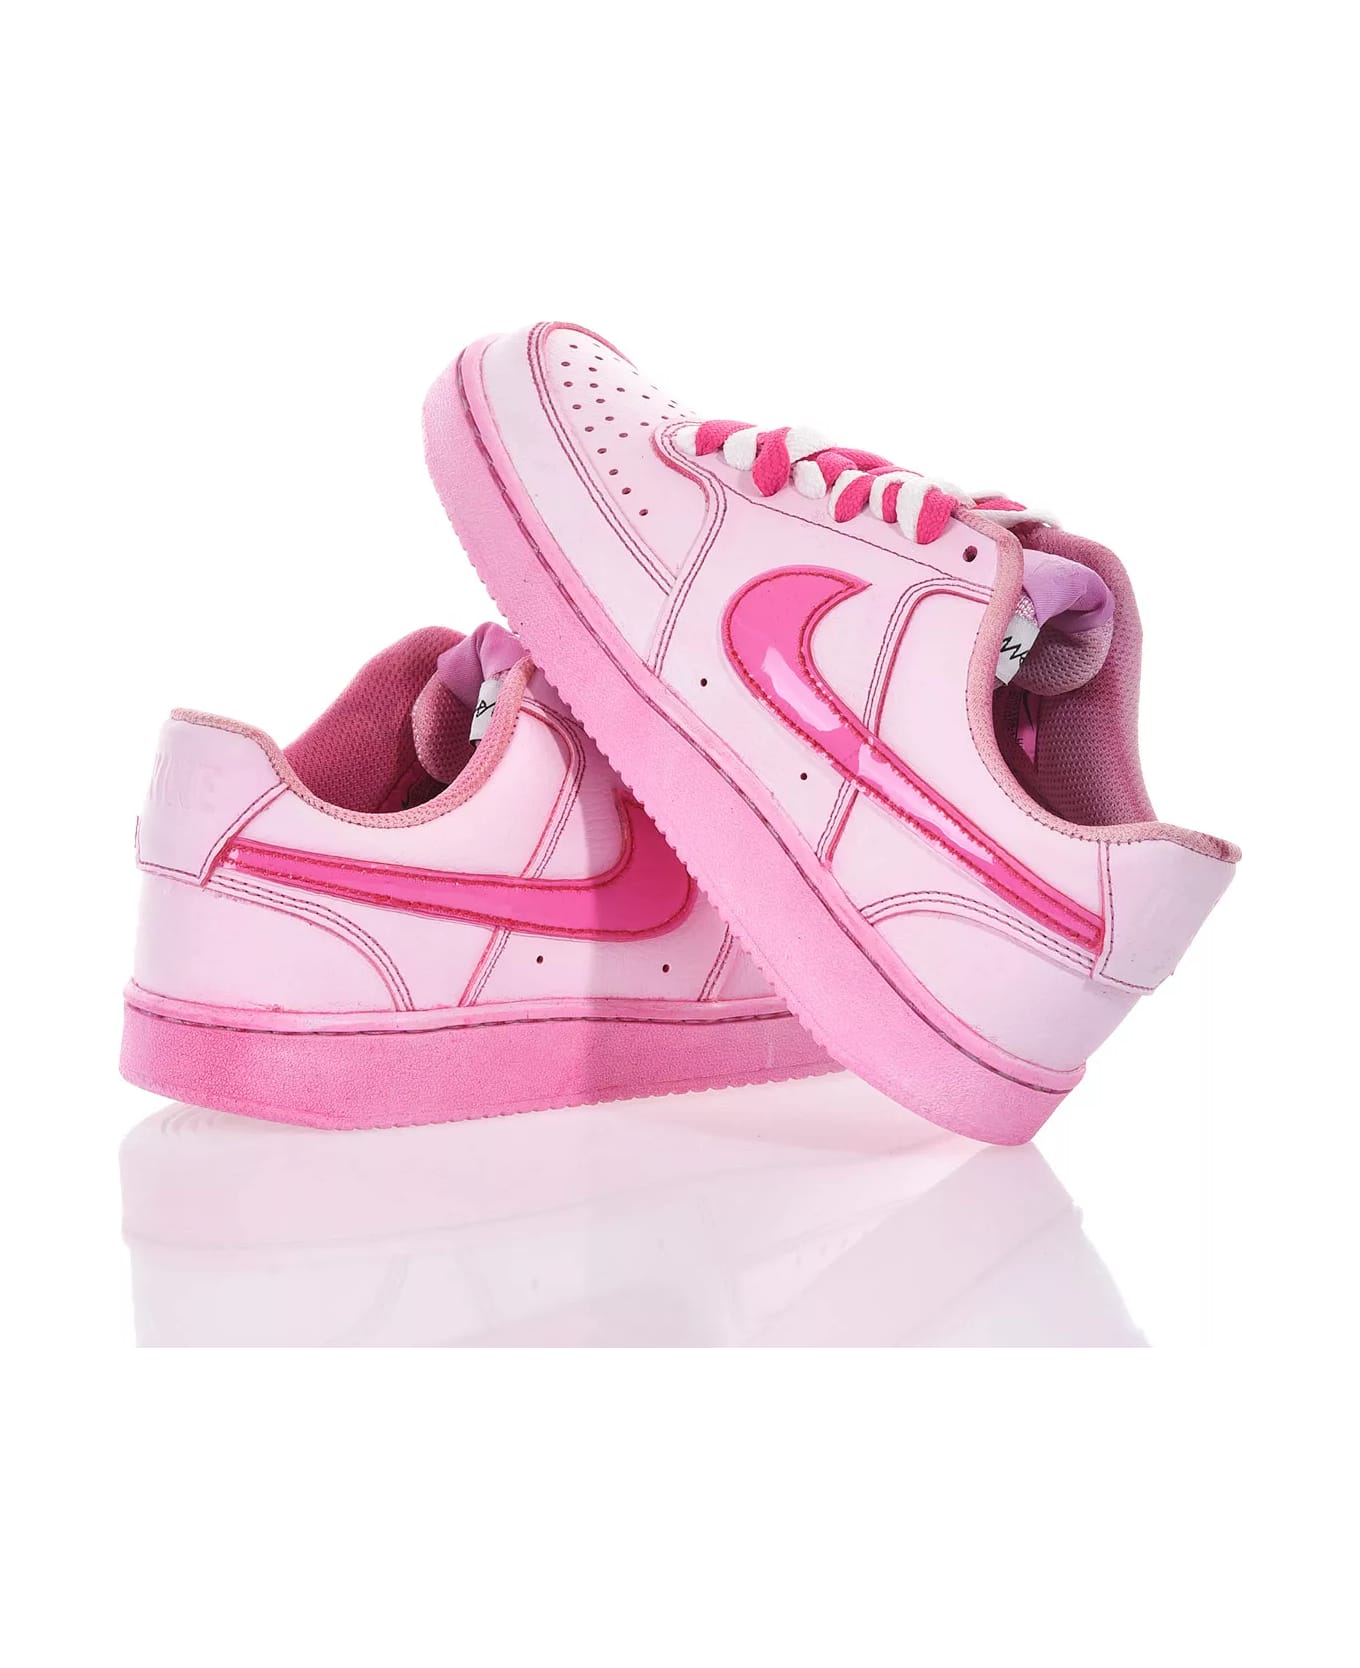 Mimanera Nike Pink Shoes: Mimanerashop.com スニーカー